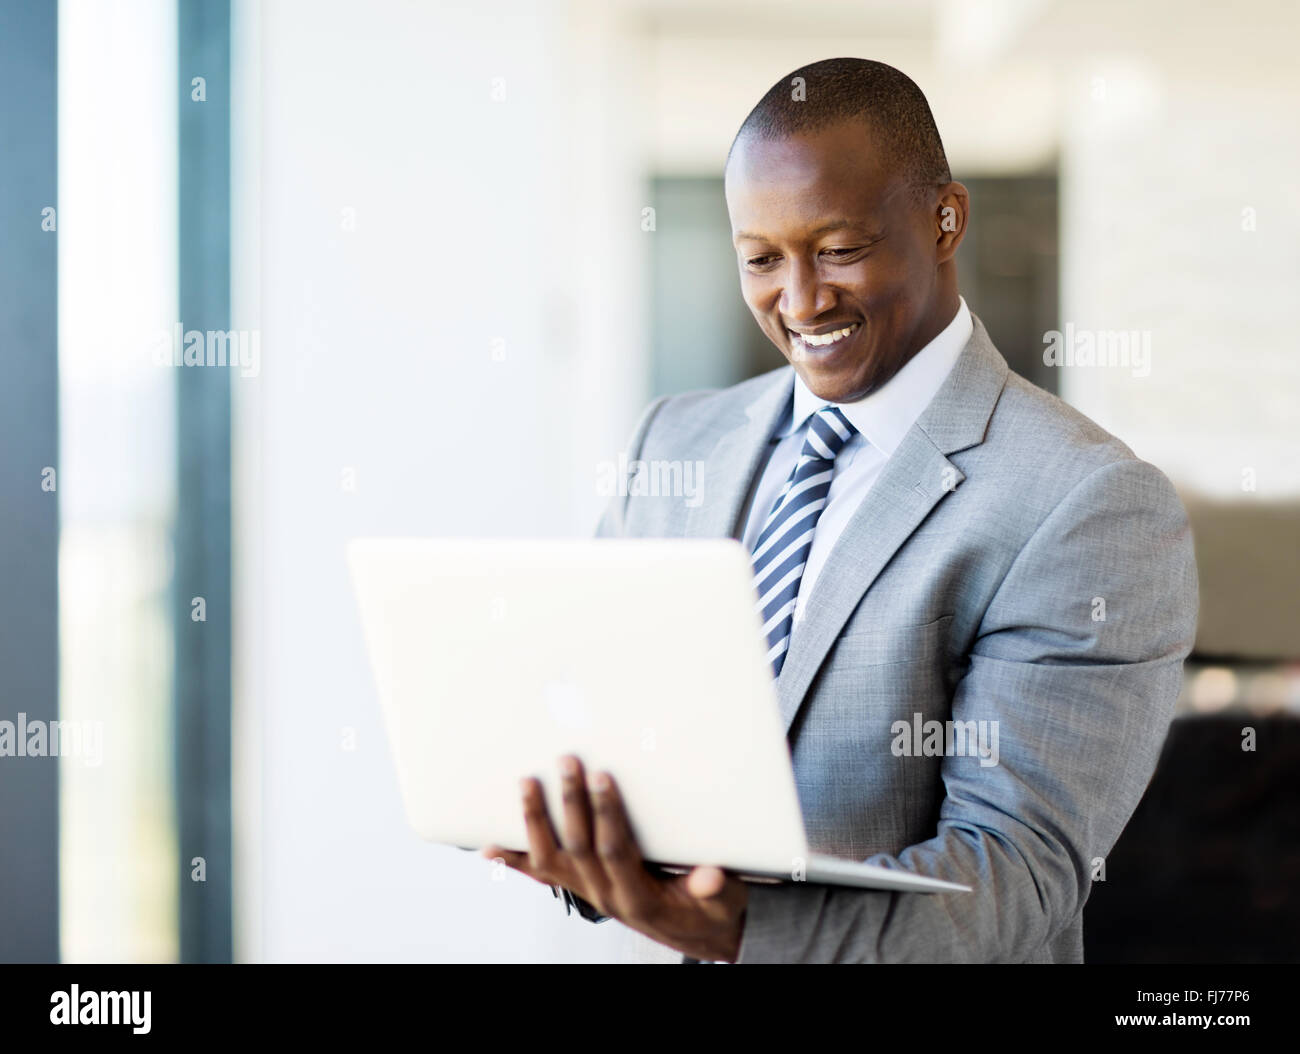 L'Afrique de smart business man using laptop in office Banque D'Images